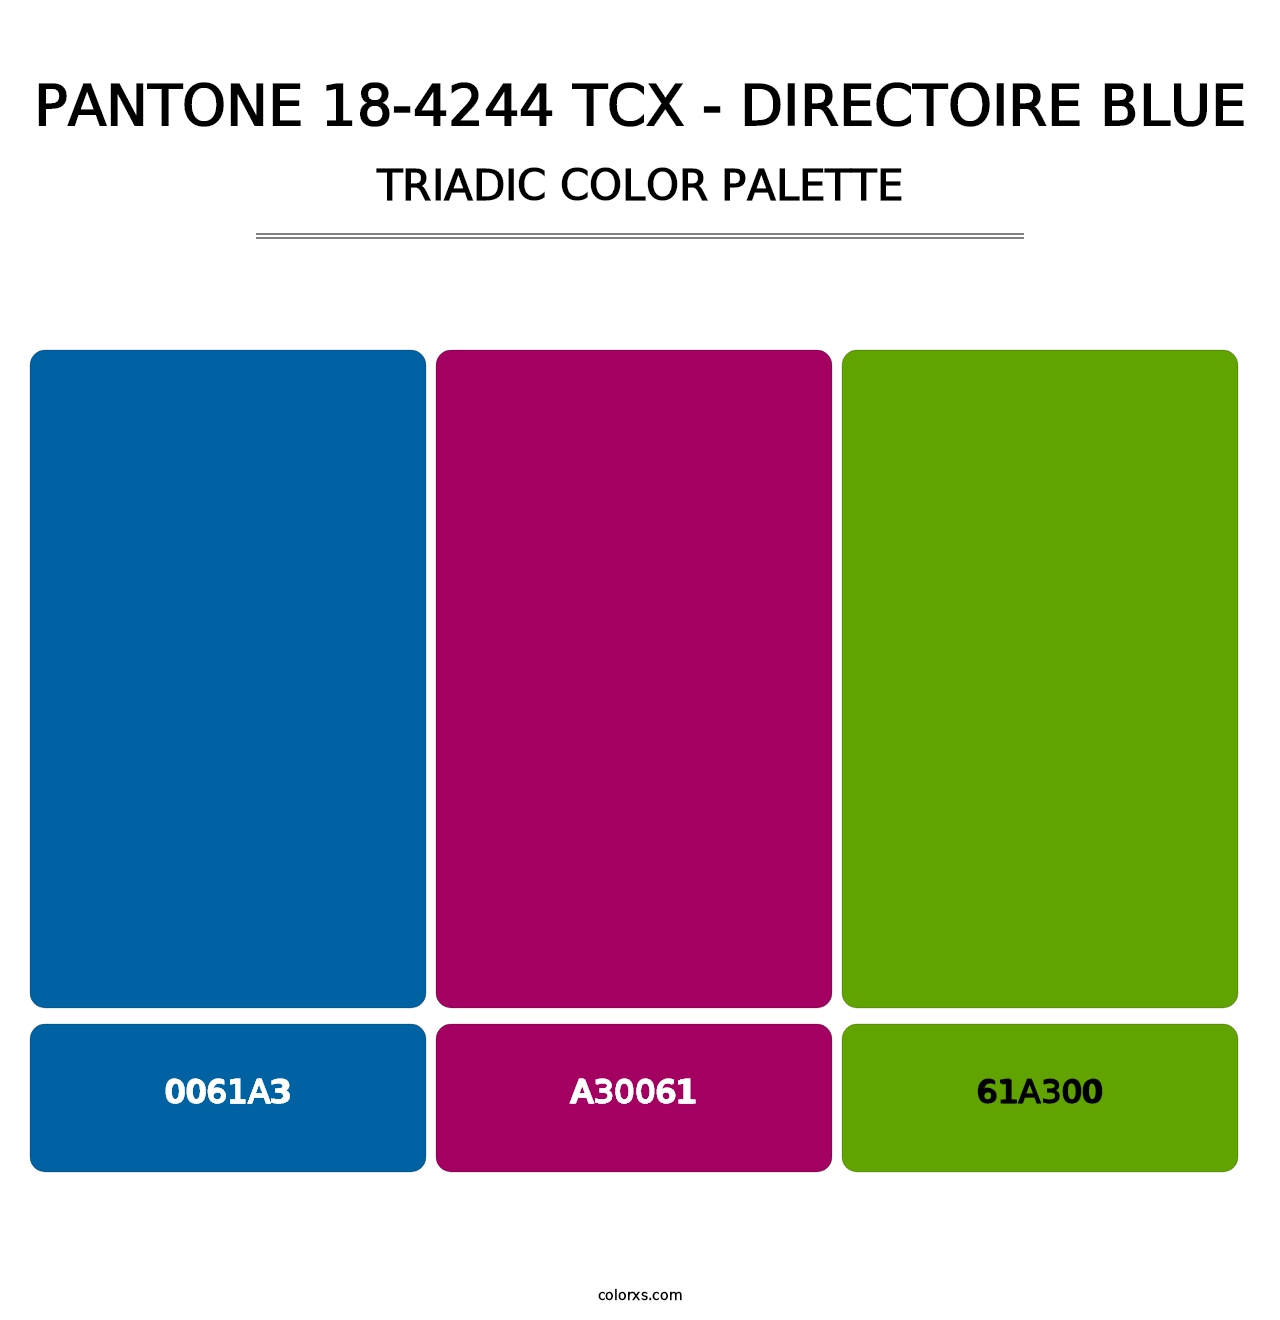 PANTONE 18-4244 TCX - Directoire Blue - Triadic Color Palette